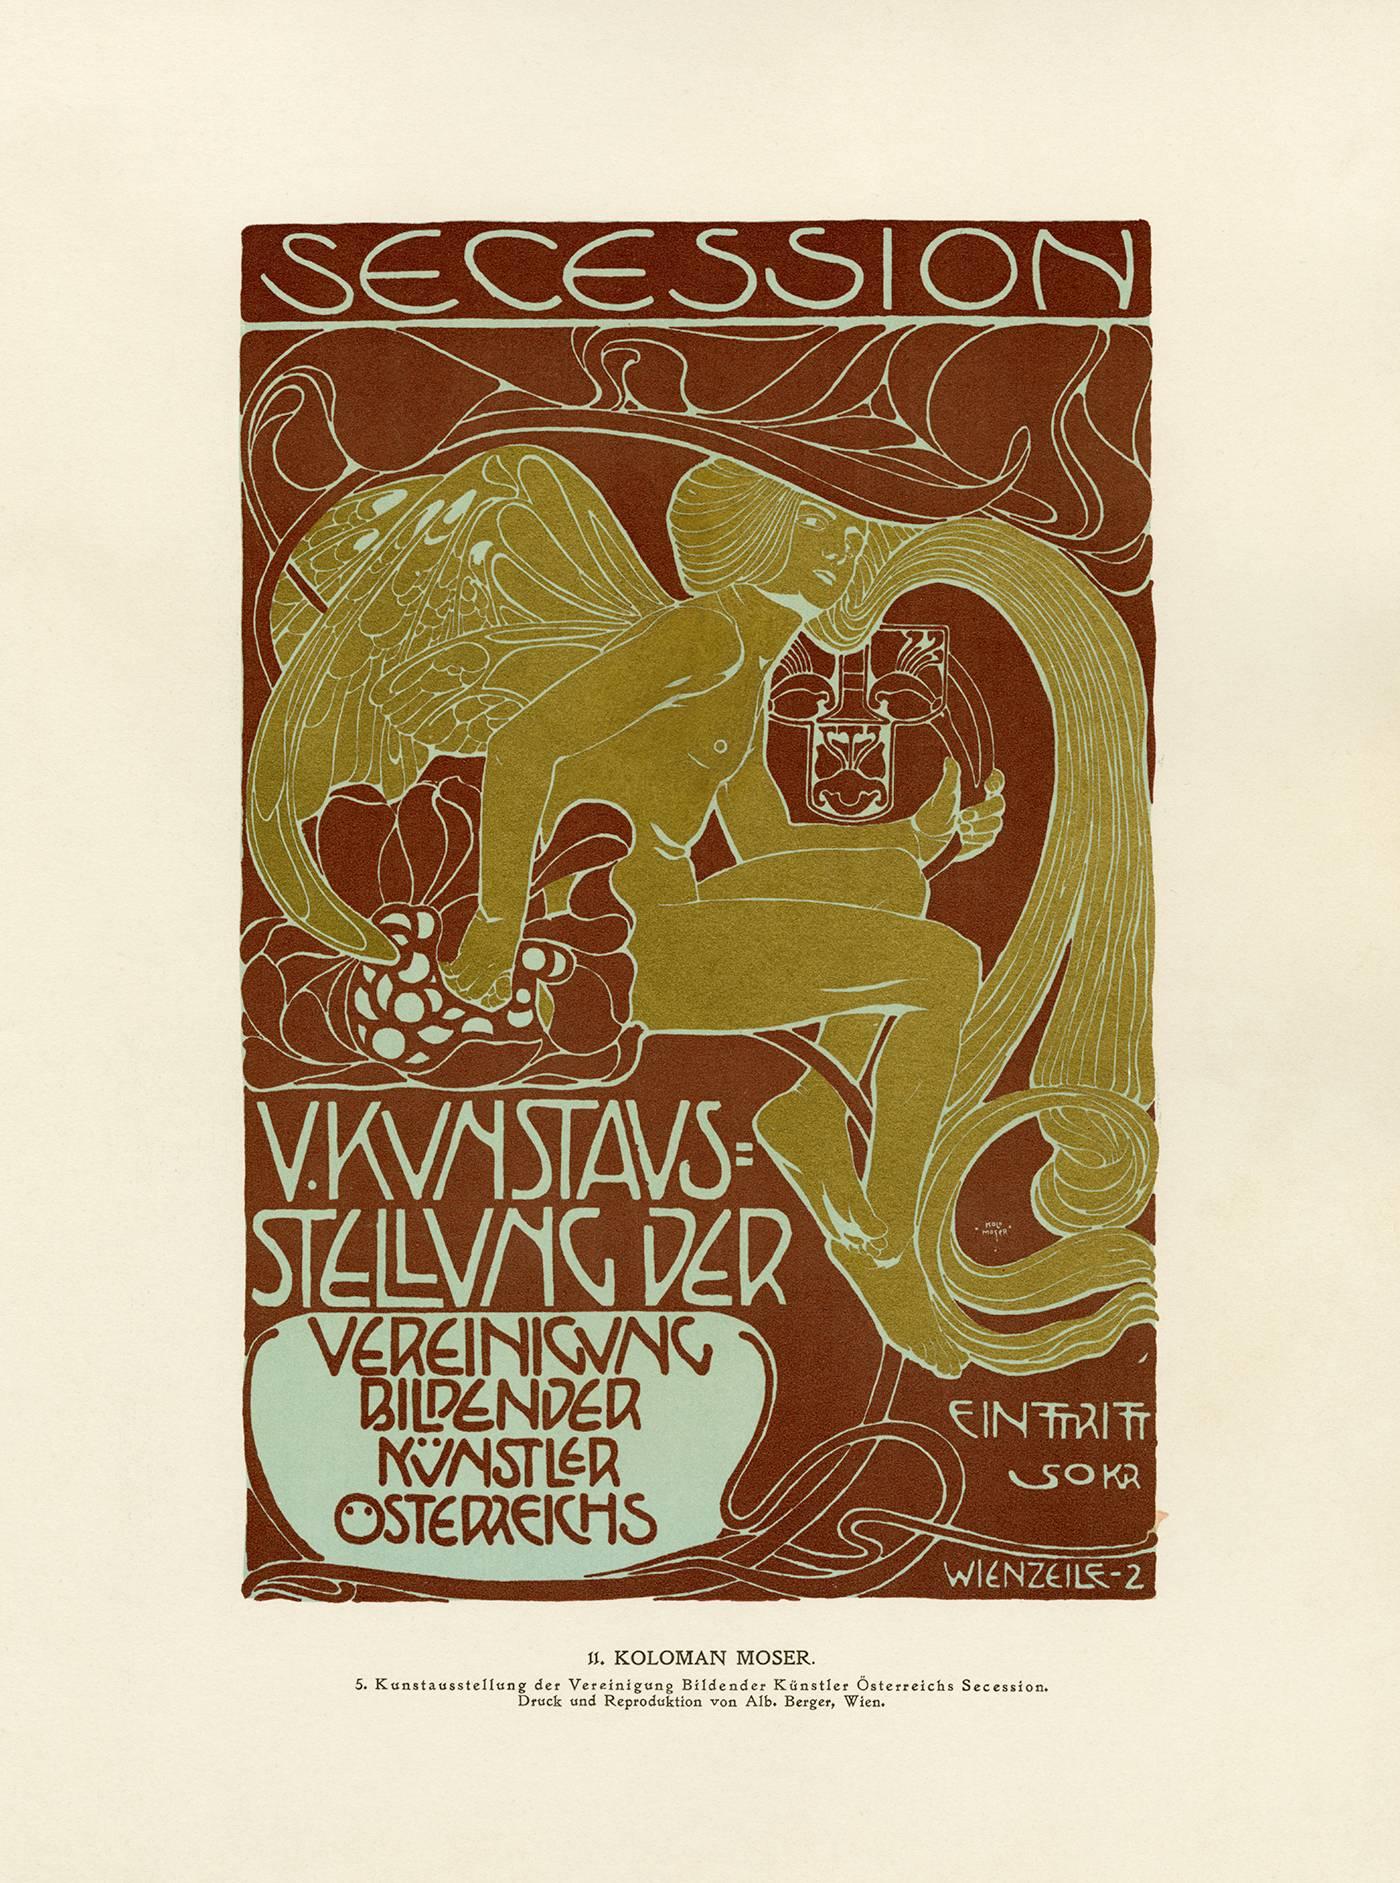 Ottokar Mascha Folio: plate 11 "5th Secession Exhibition Poster" by Kolo Moser